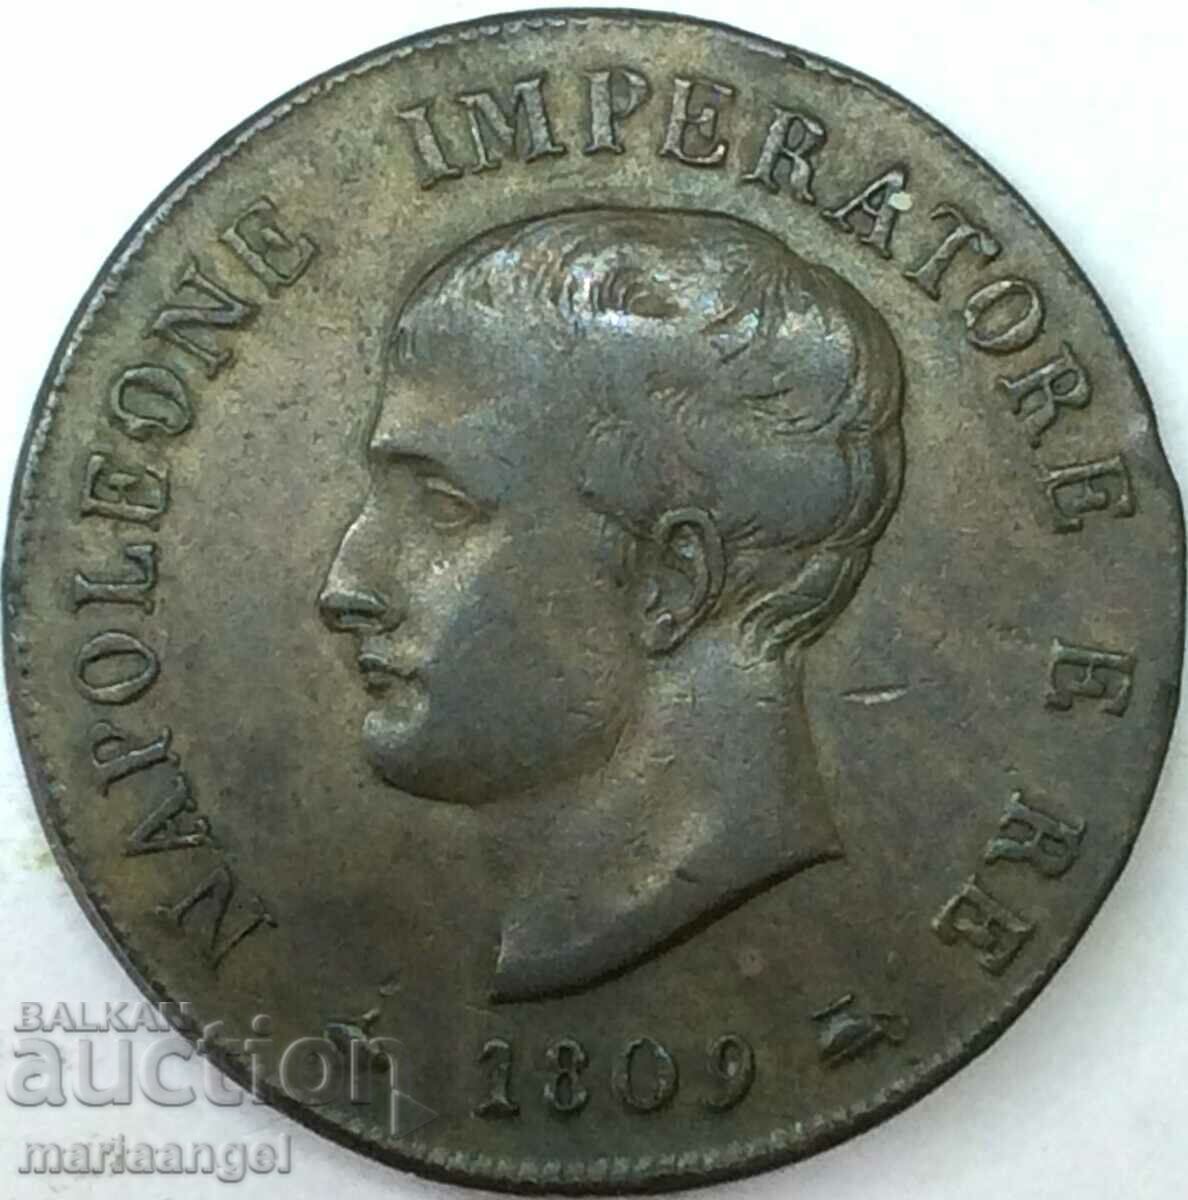 Napoleon soldo 1809 Italy 10.36g 27mm bronze